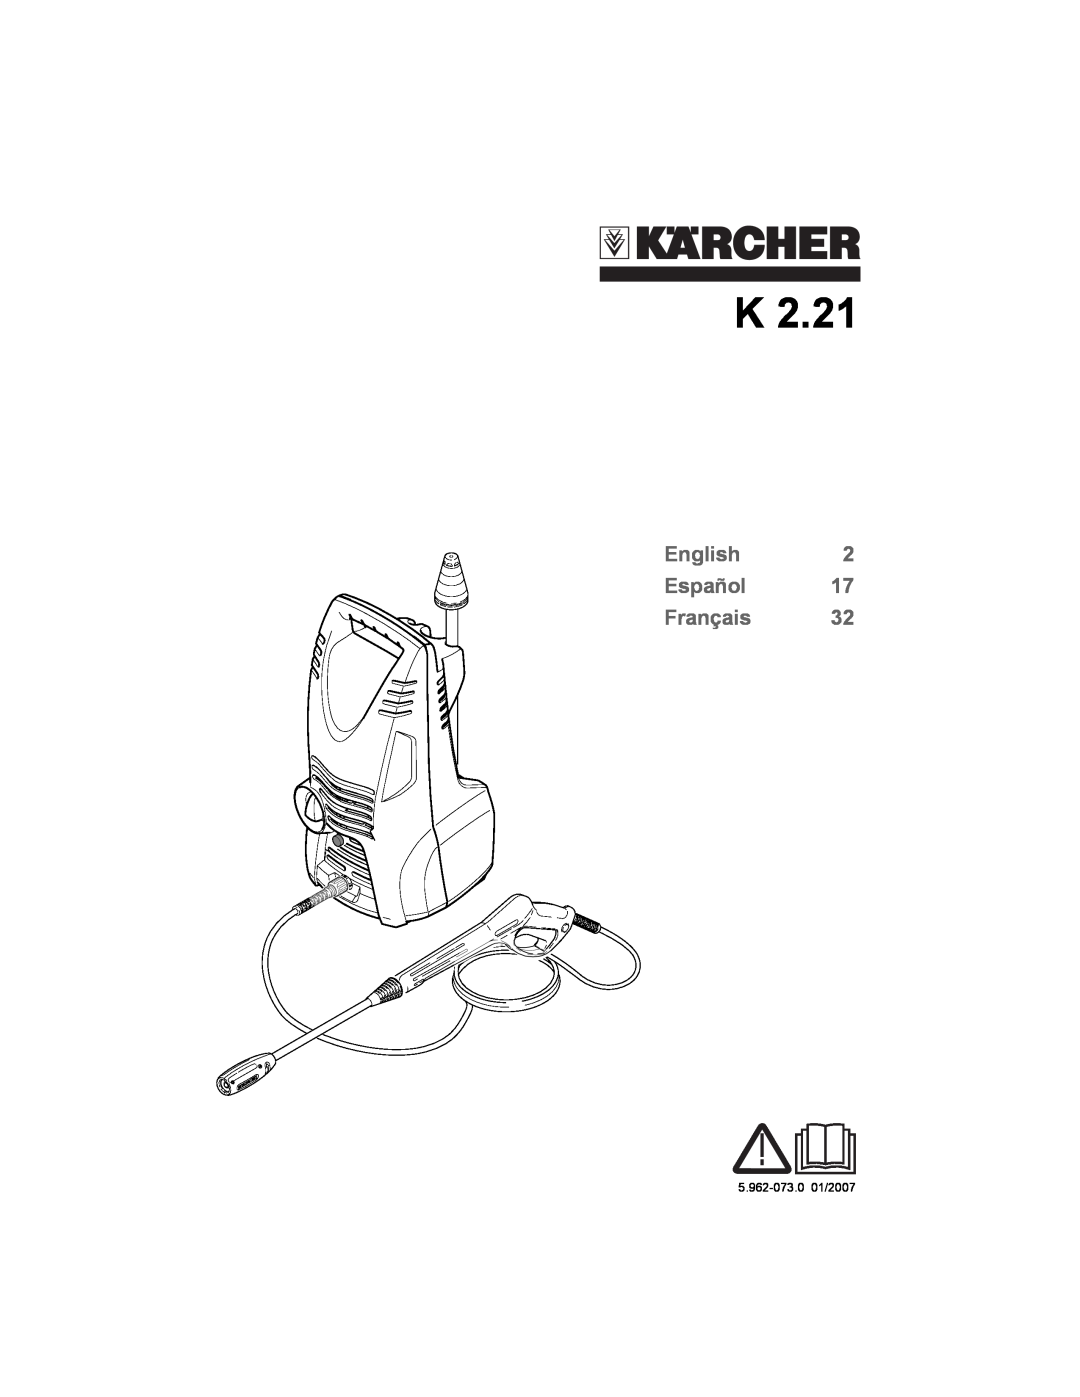 Karcher K 2.21 manual English Español Français, 5.962-073.0 01/2007 